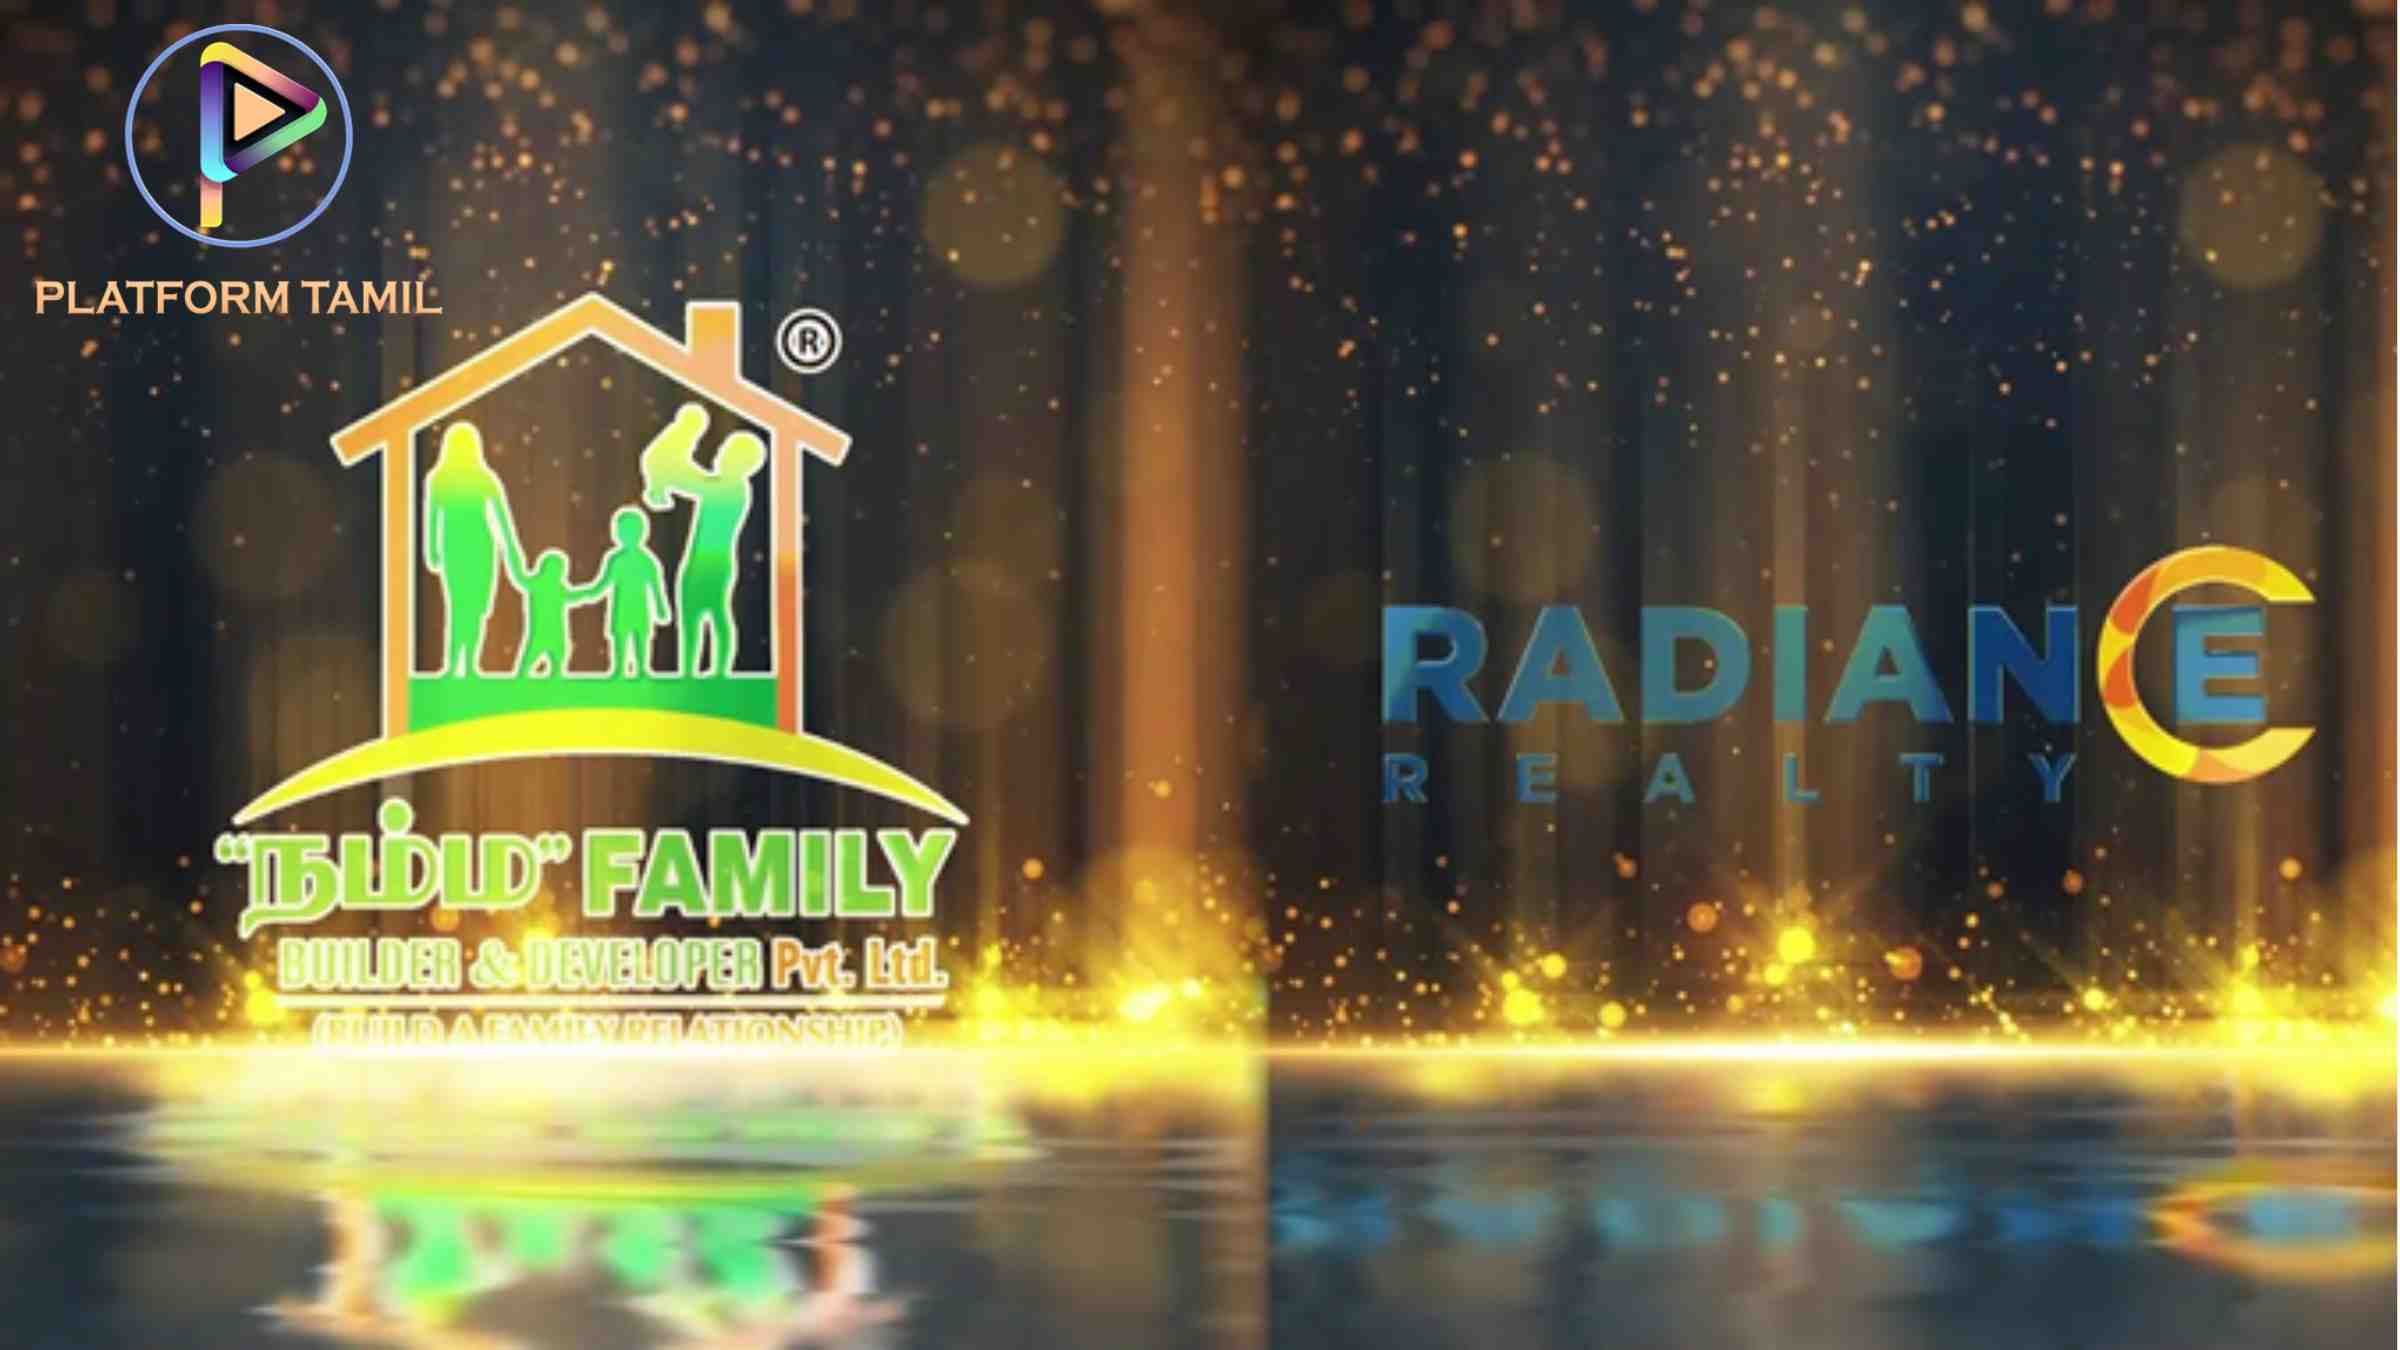 Radiance Varam - Platform Tamil